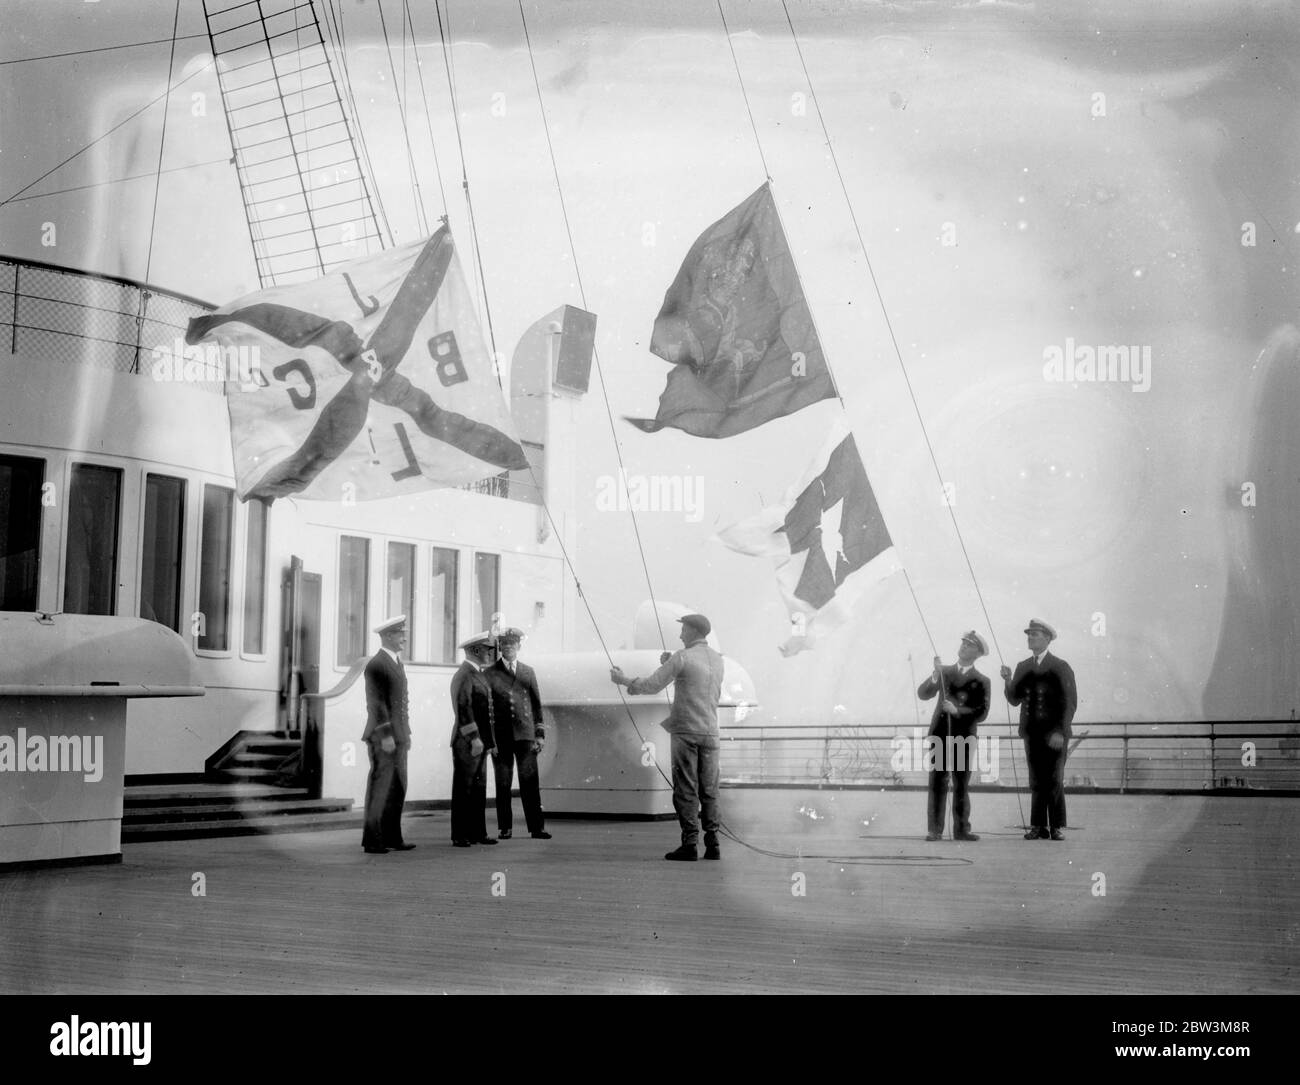 La regina Mary , consegnata a Cunard White Star a Southampton , vola le sue nuove bandiere . La Regina Mary RMS è ora ufficialmente una Cunard White Star Liner . Le bandiere di John Brown e della Compagnia dei costruttori navali , sono state abbassate a bordo della nave gigante di Southampton e la bandiera della Cunard White Star è stata issata al loro posto. Foto , che issava le bandiere Cunard White Star e abbassava la bandiera John Browns come la ' Queen Mary' fu consegnata a Southampton . 12 maggio 1936 Foto Stock